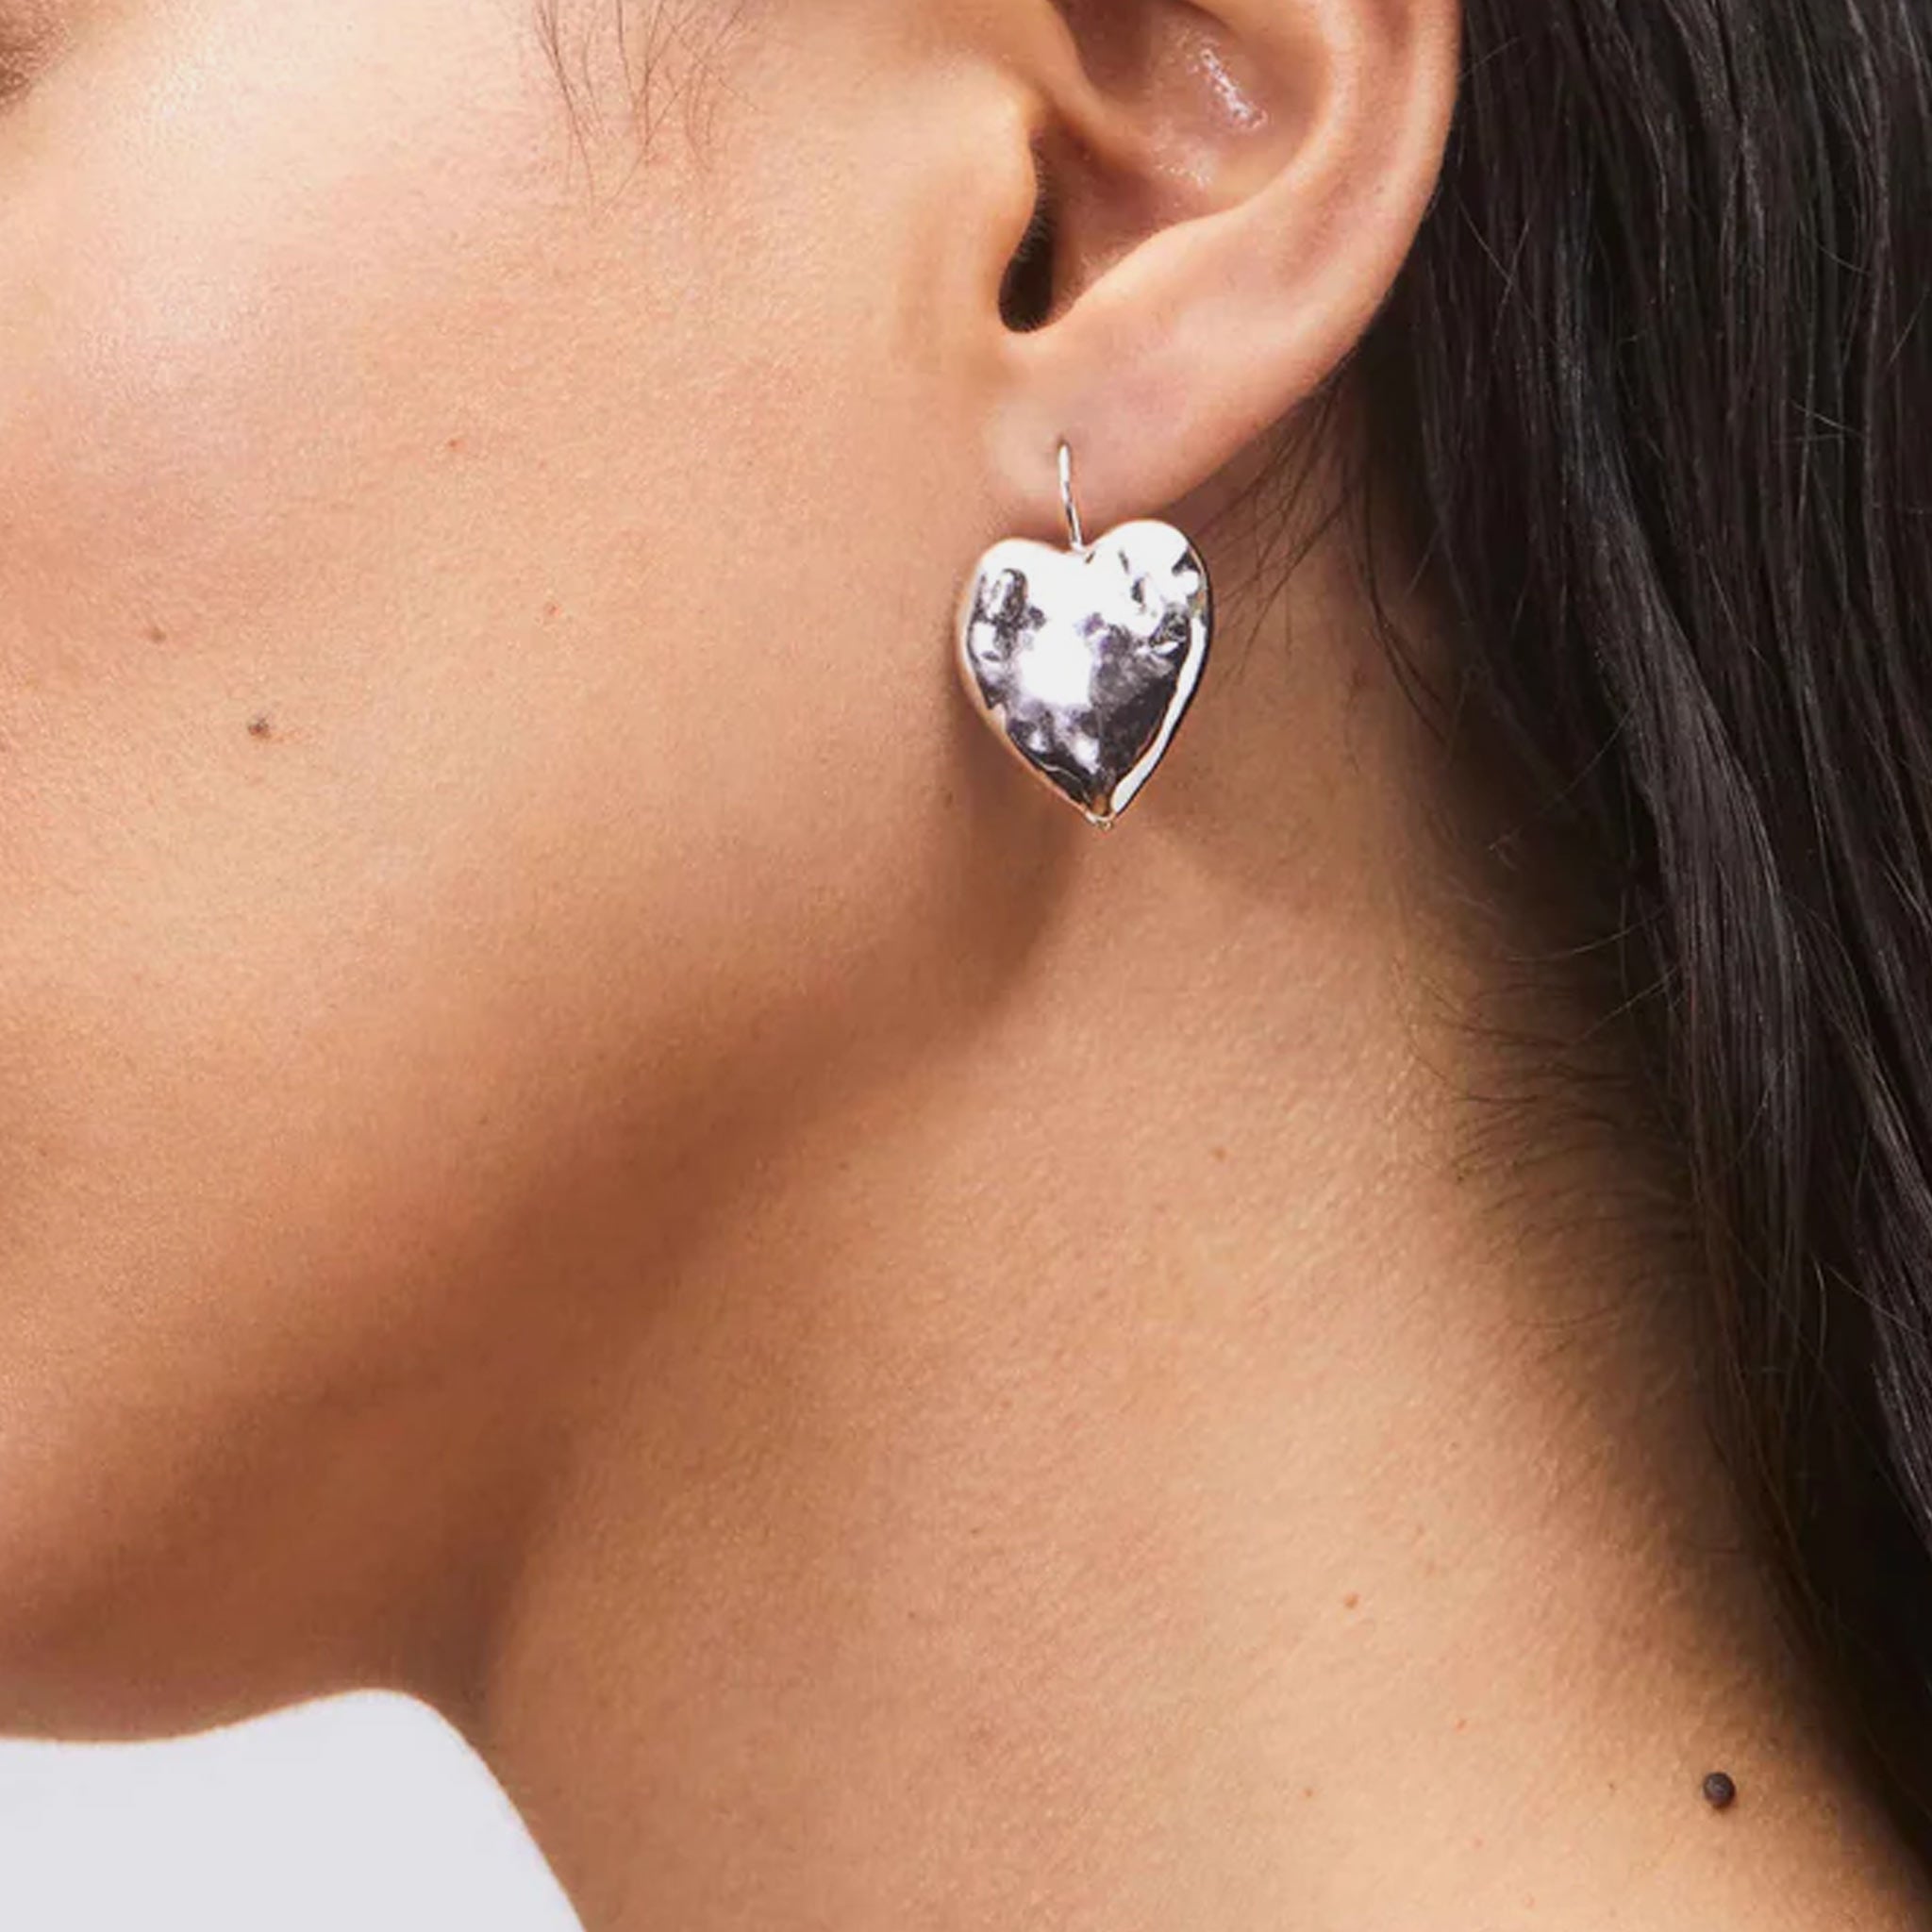 A model wears the Hear Burn Earrings - a silver hammered drop earrings in a heart shape.